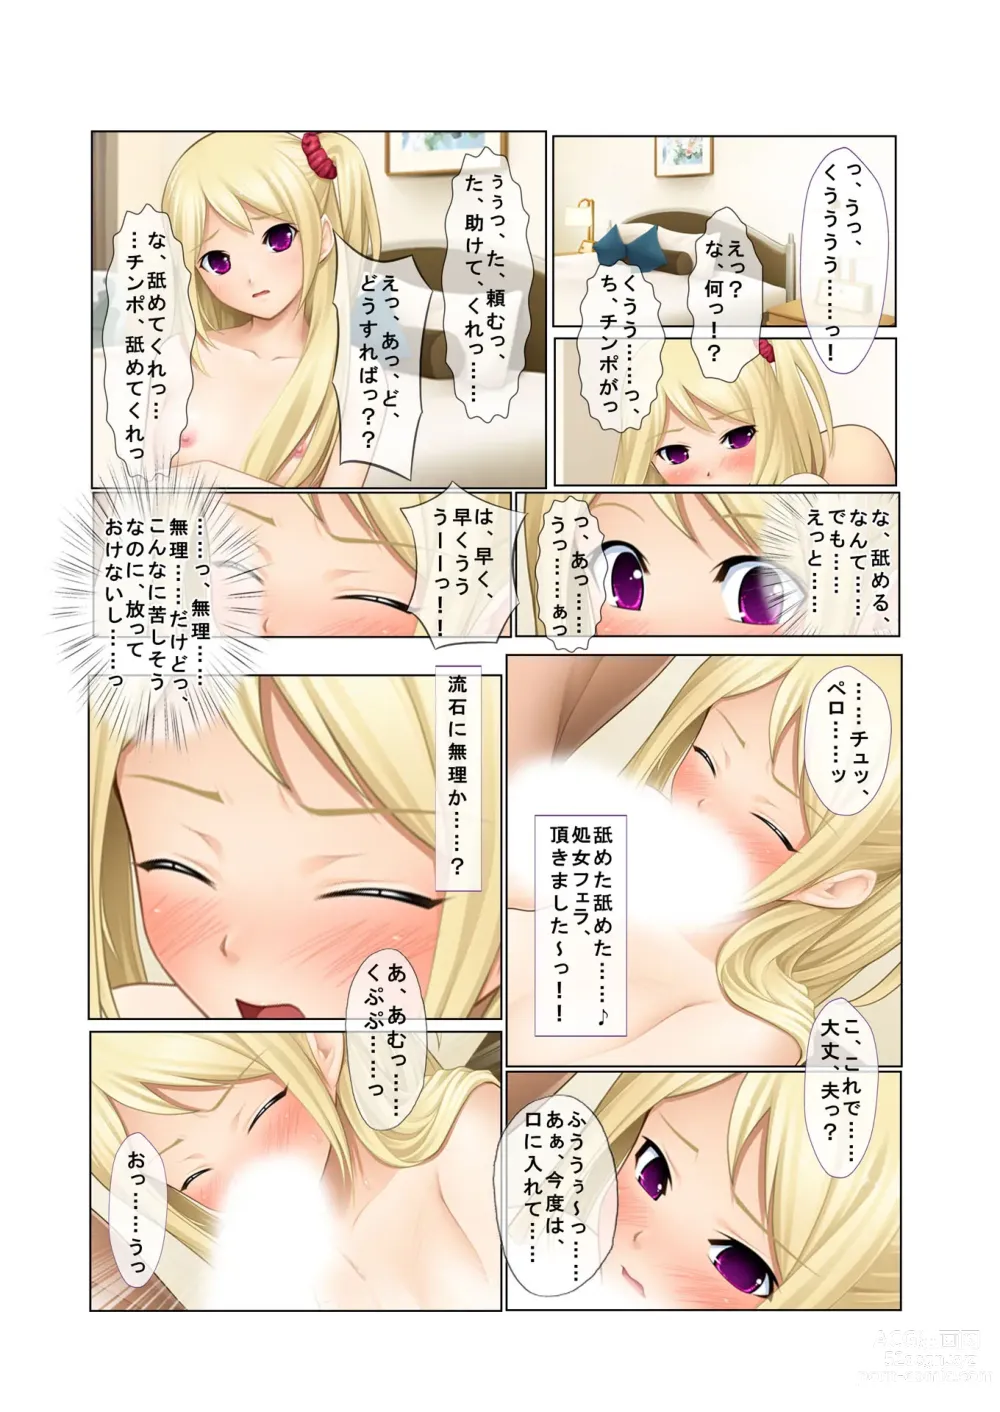 Page 31 of doujinshi 06ナンパ生ハメ♂♀出会ったその日に即ハメる!～派遣社員・人妻・お嬢様に中で出しちゃった!～ フルカラーコミック版